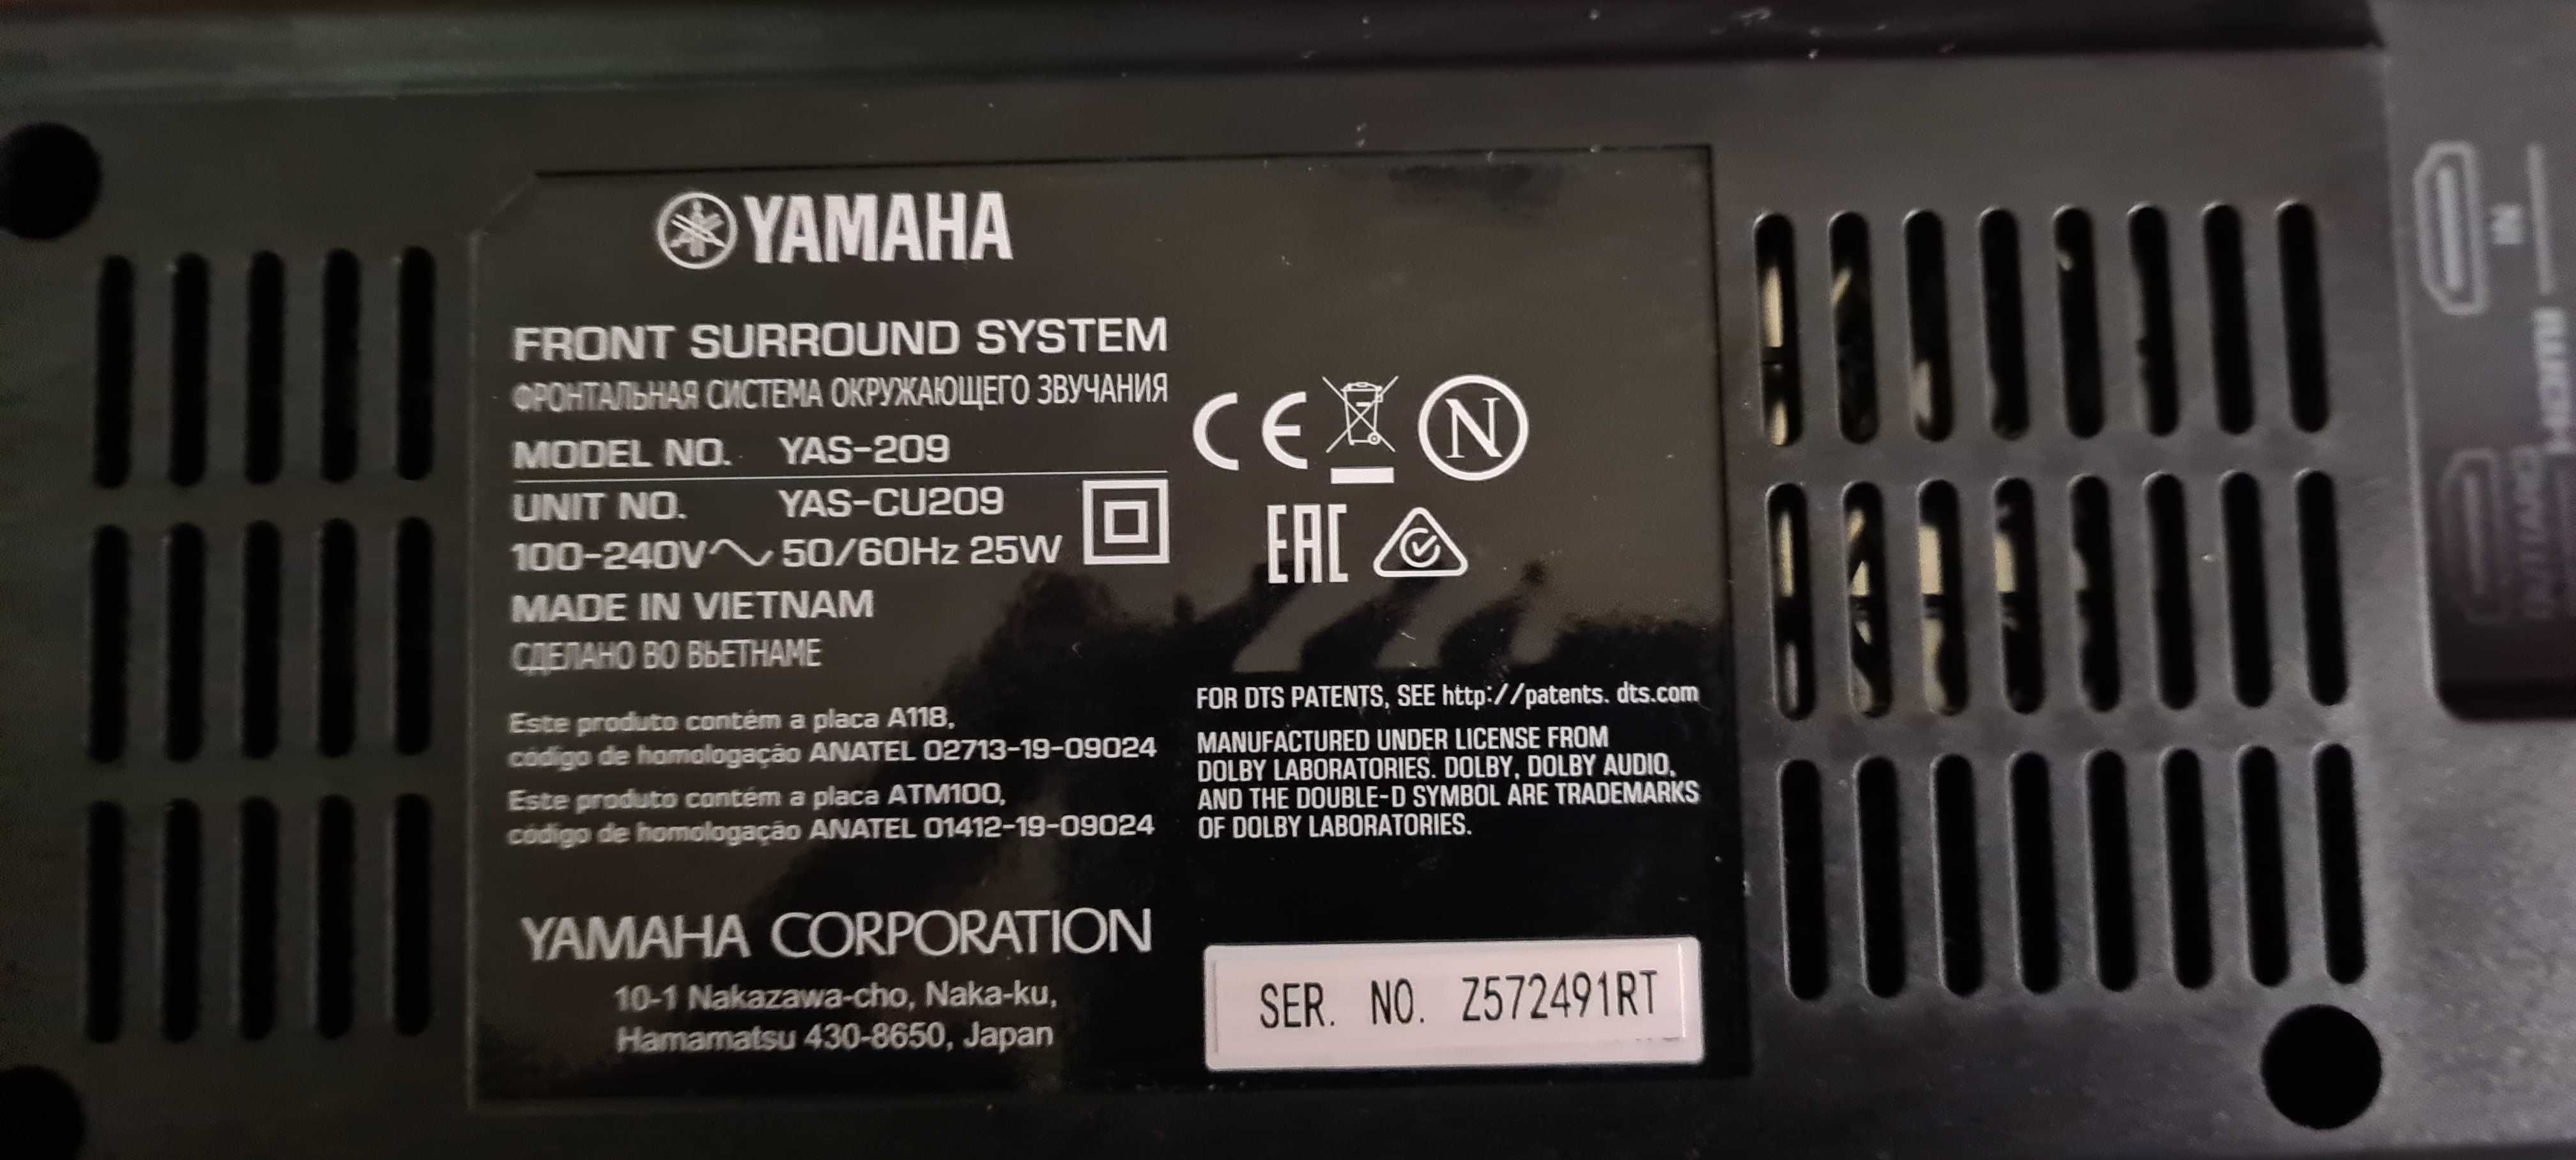 Soundbar Yamaha yas 209